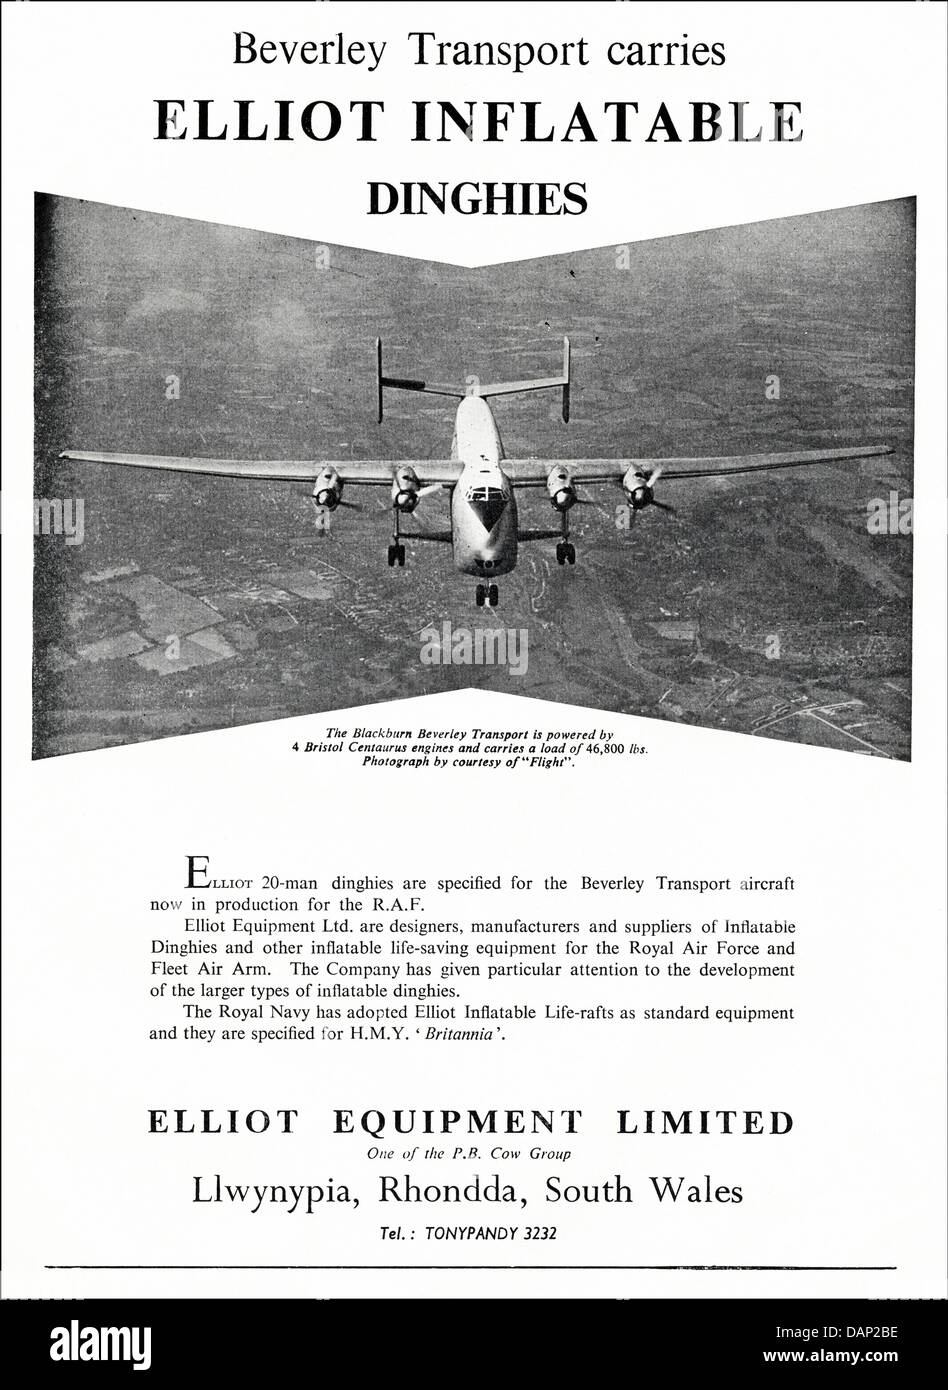 Anzeige für Schlauchboote & Rettungsmittel durch Elliot Equipment Limited Llwynypia Rhondda South Wales UK Lieferanten auf die Flugzeug-Industrie Anzeige in Fachzeitschrift ca. 1955 Stockfoto